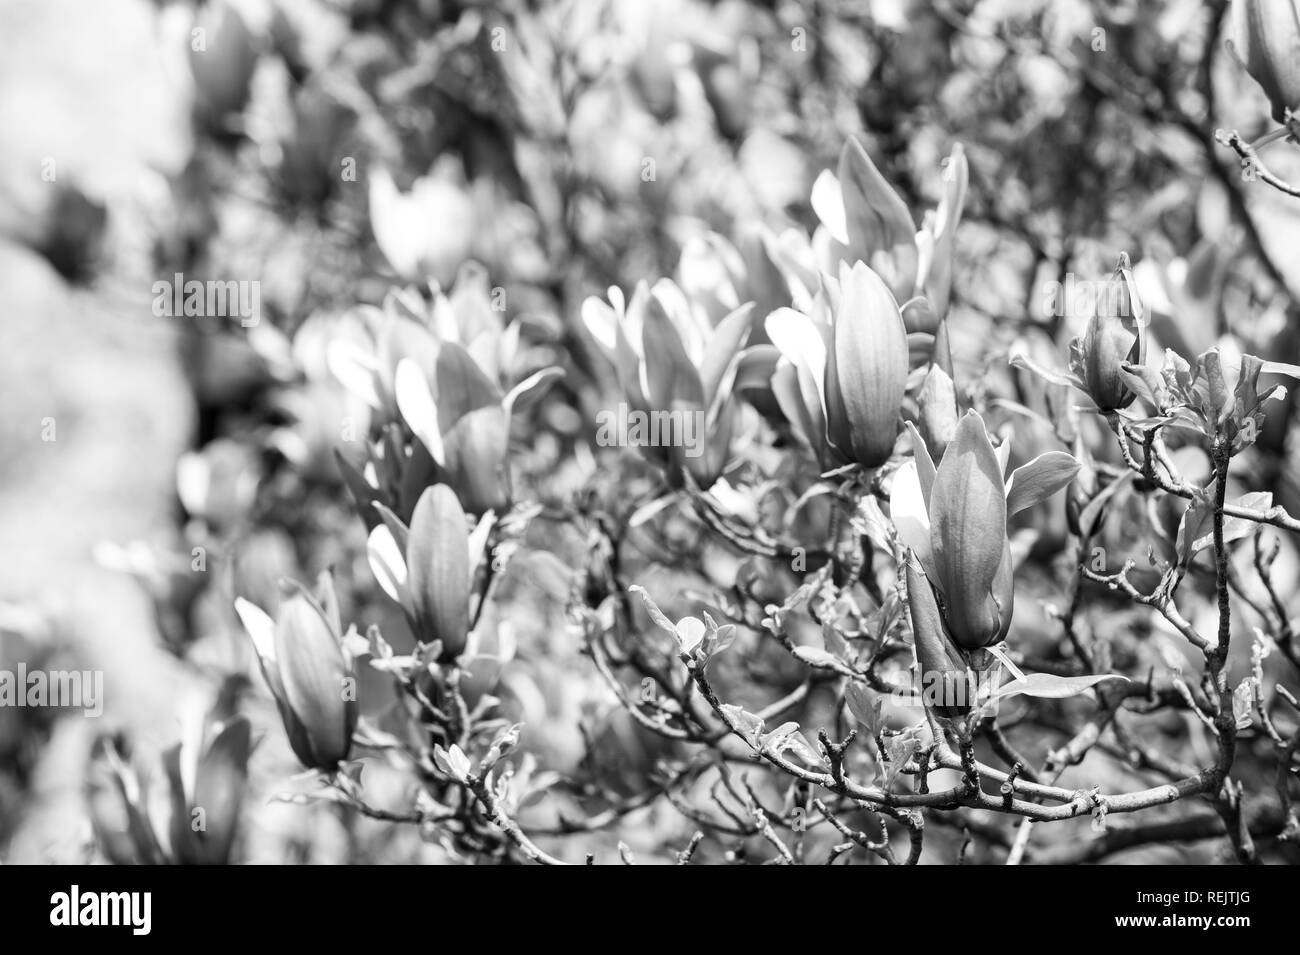 La nature, la beauté, l'environnement. Magnolia à fleurs violettes aux beaux jours, au printemps. Blossom, Bloom, la floraison. Saison Printemps Nouveau concept de croissance de la vie Banque D'Images